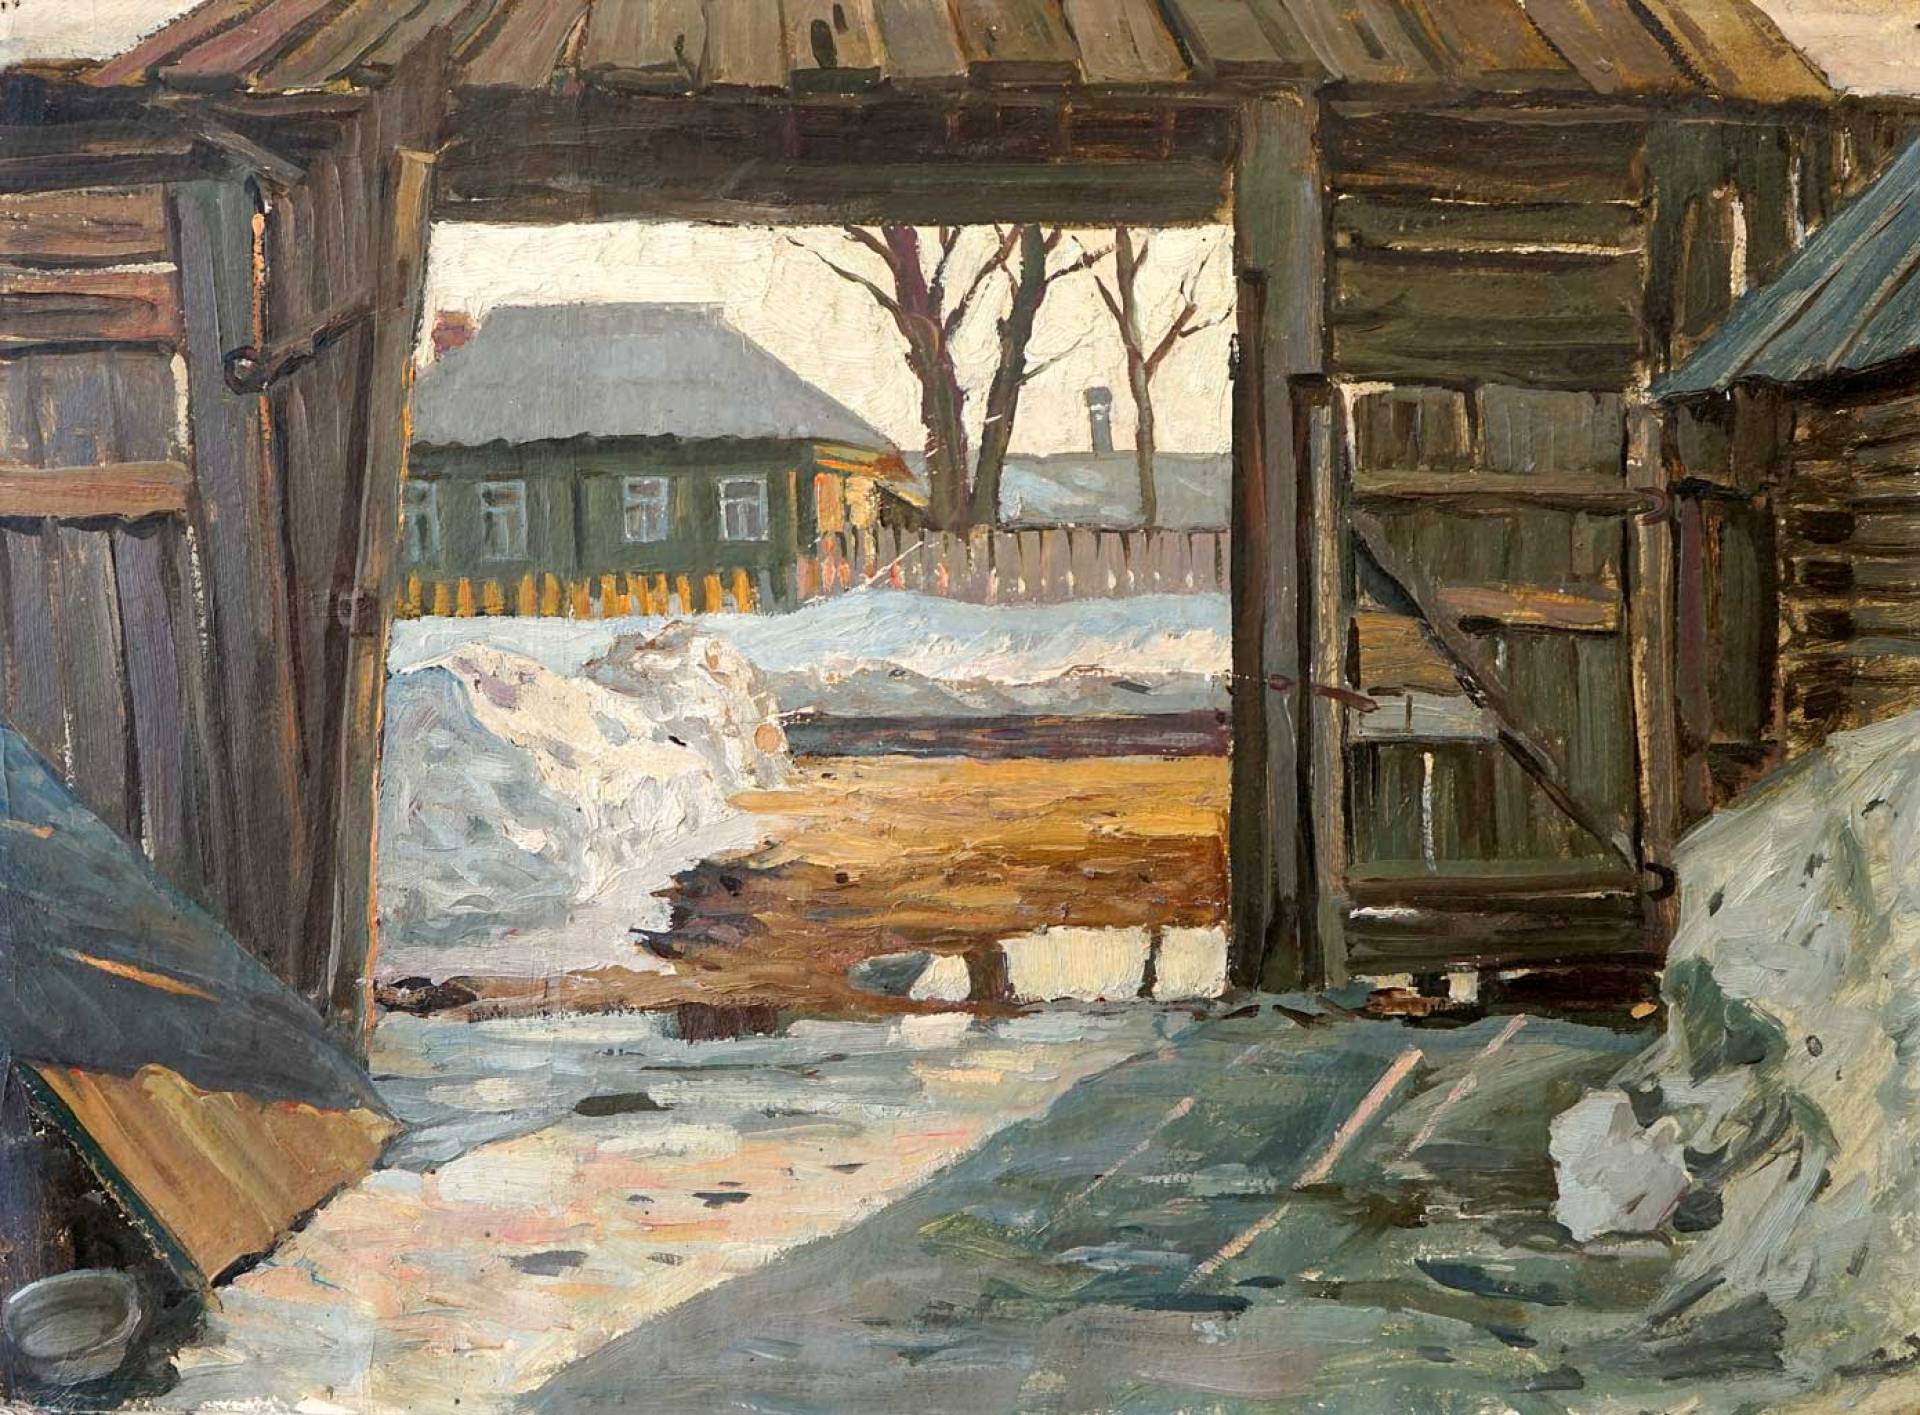 In the Yard, Boris Glushkov, Buy the painting Oil